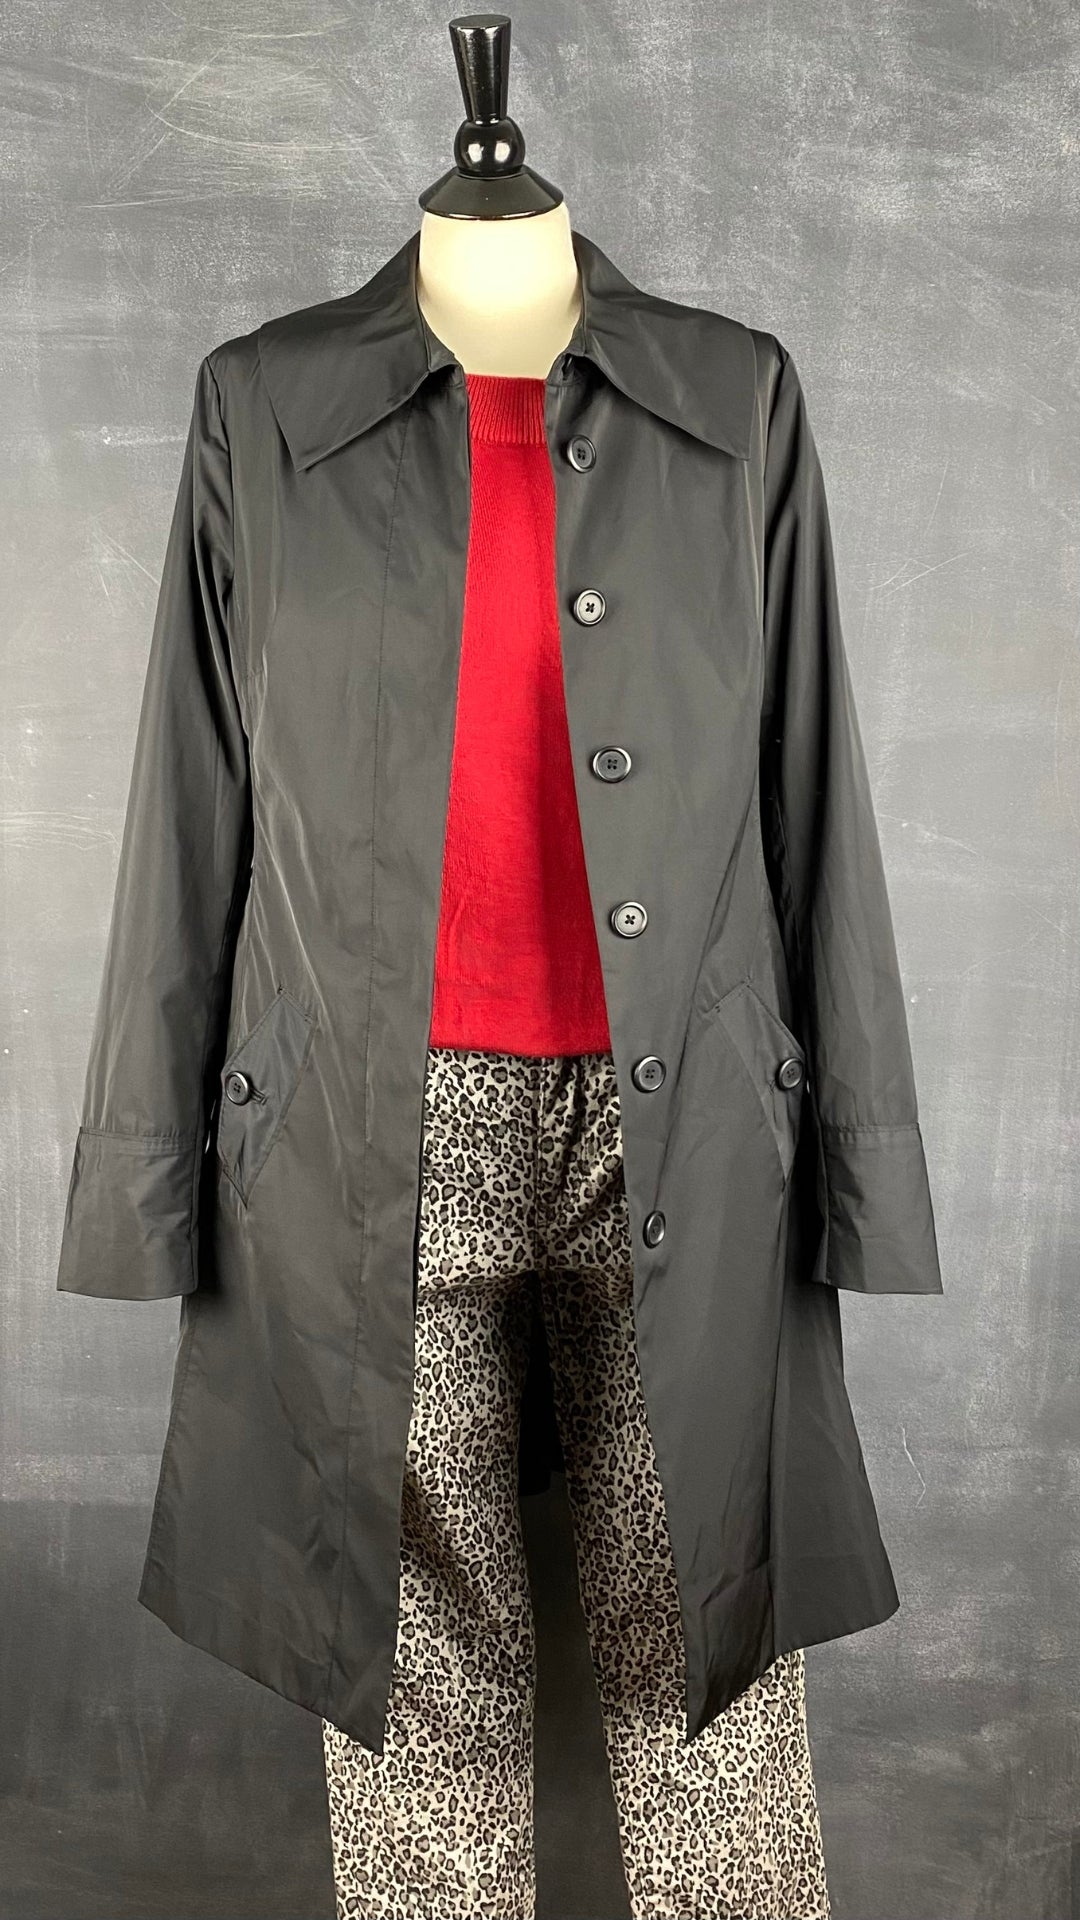 Manteau noir printanier Tristan, taille s/m. Vue de l'agencement avec un tricot rouge et un pantalon léopard.